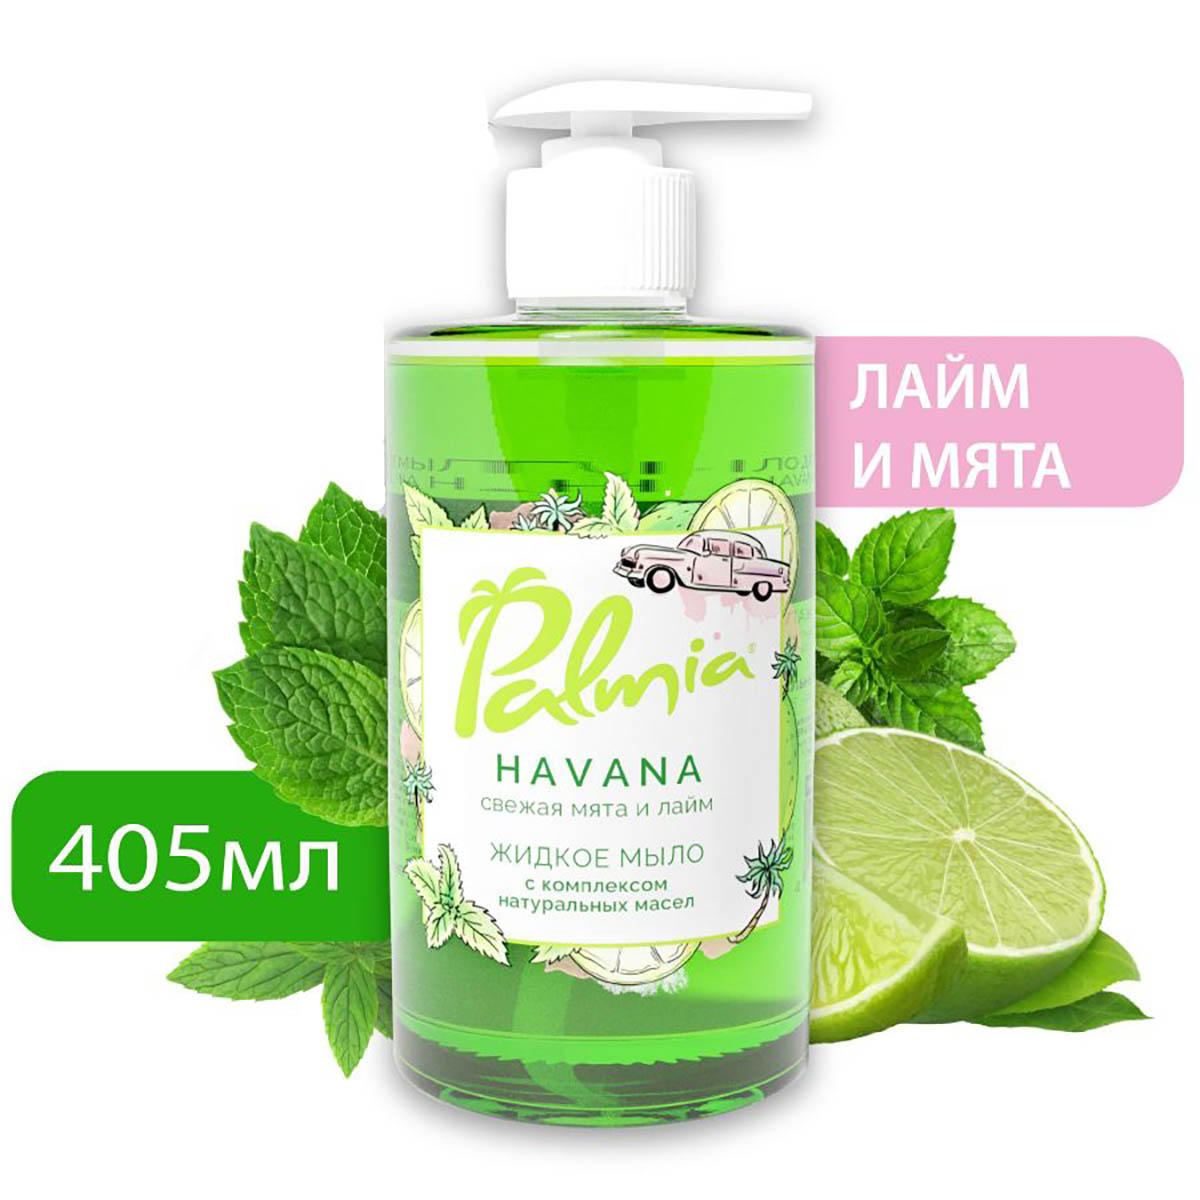 Жидкое мыло для рук Palmia Havana с комплексом натуральных масел, 405 мл